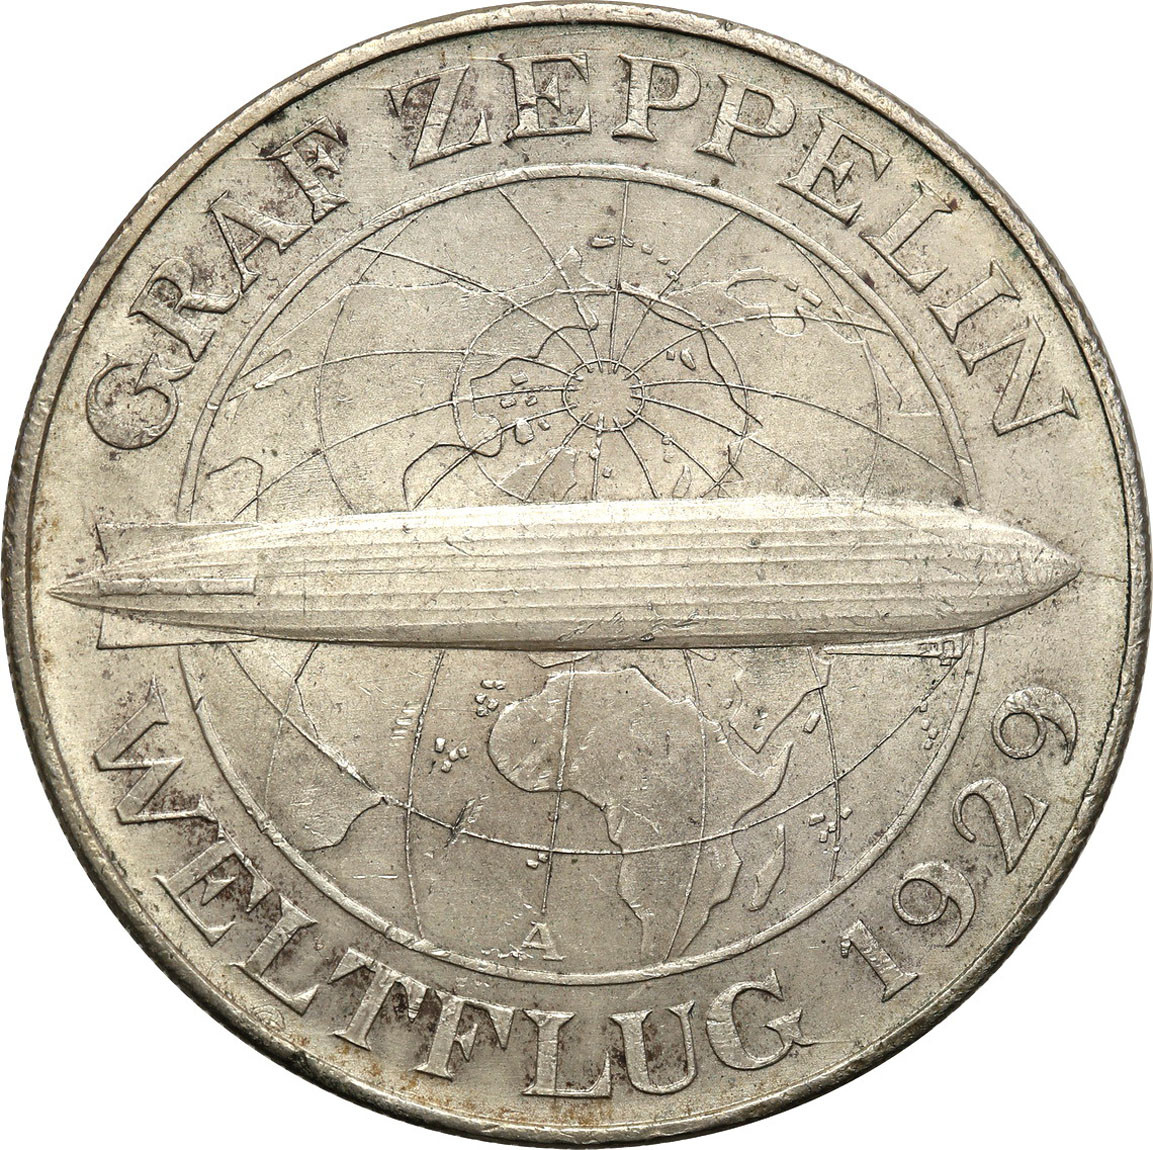 Niemcy, Weimar. 5 Marek 1929 A, Zeppelin